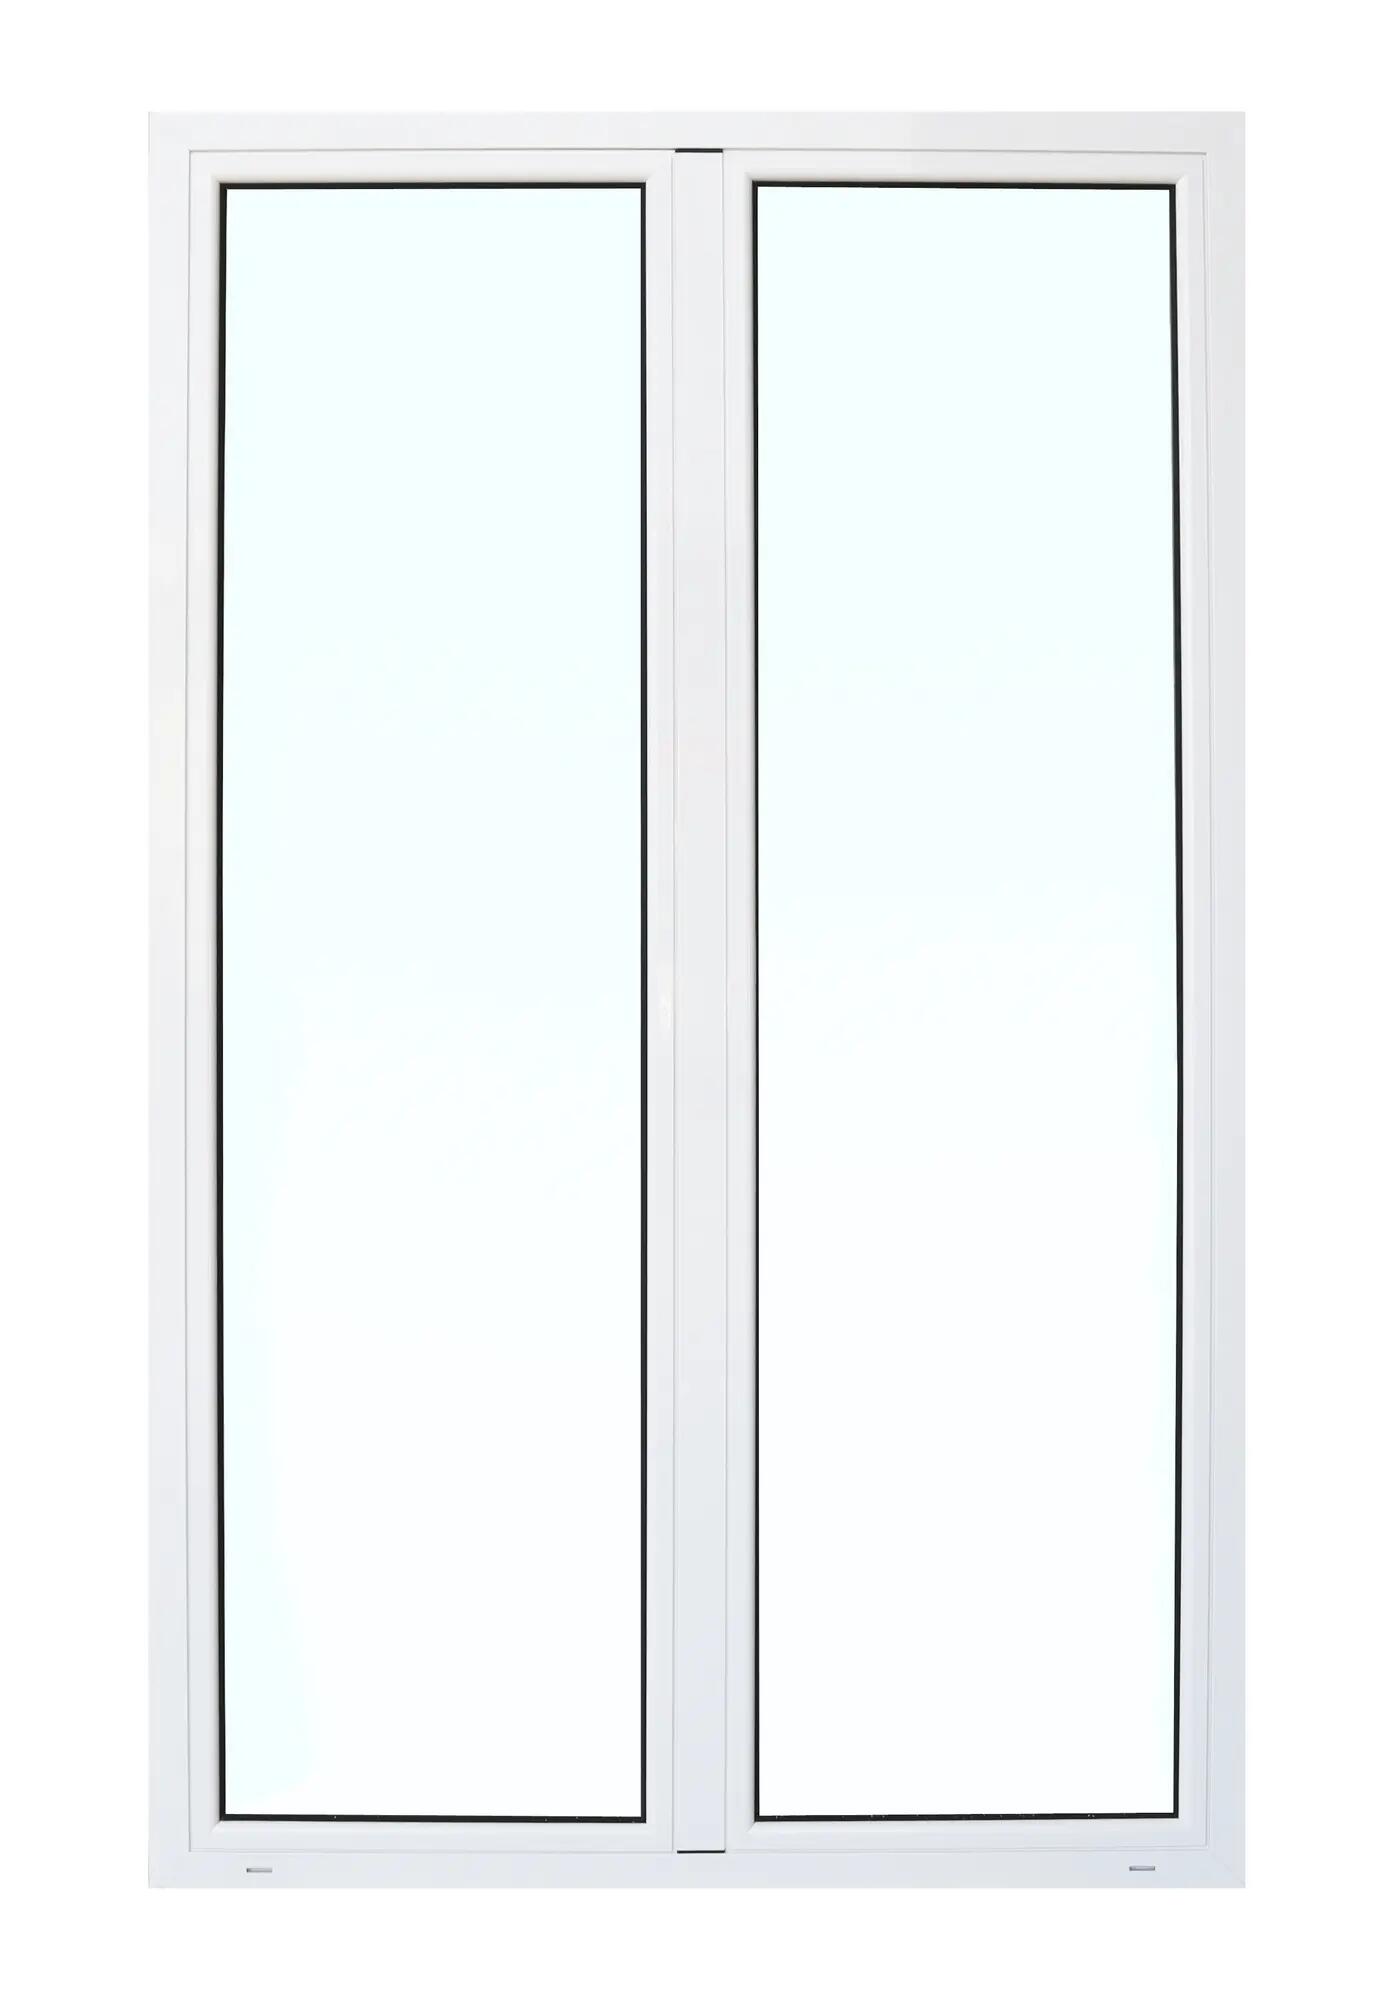 Balconera aluminio artens blanca practicable 130x210cm de la marca ARTENS